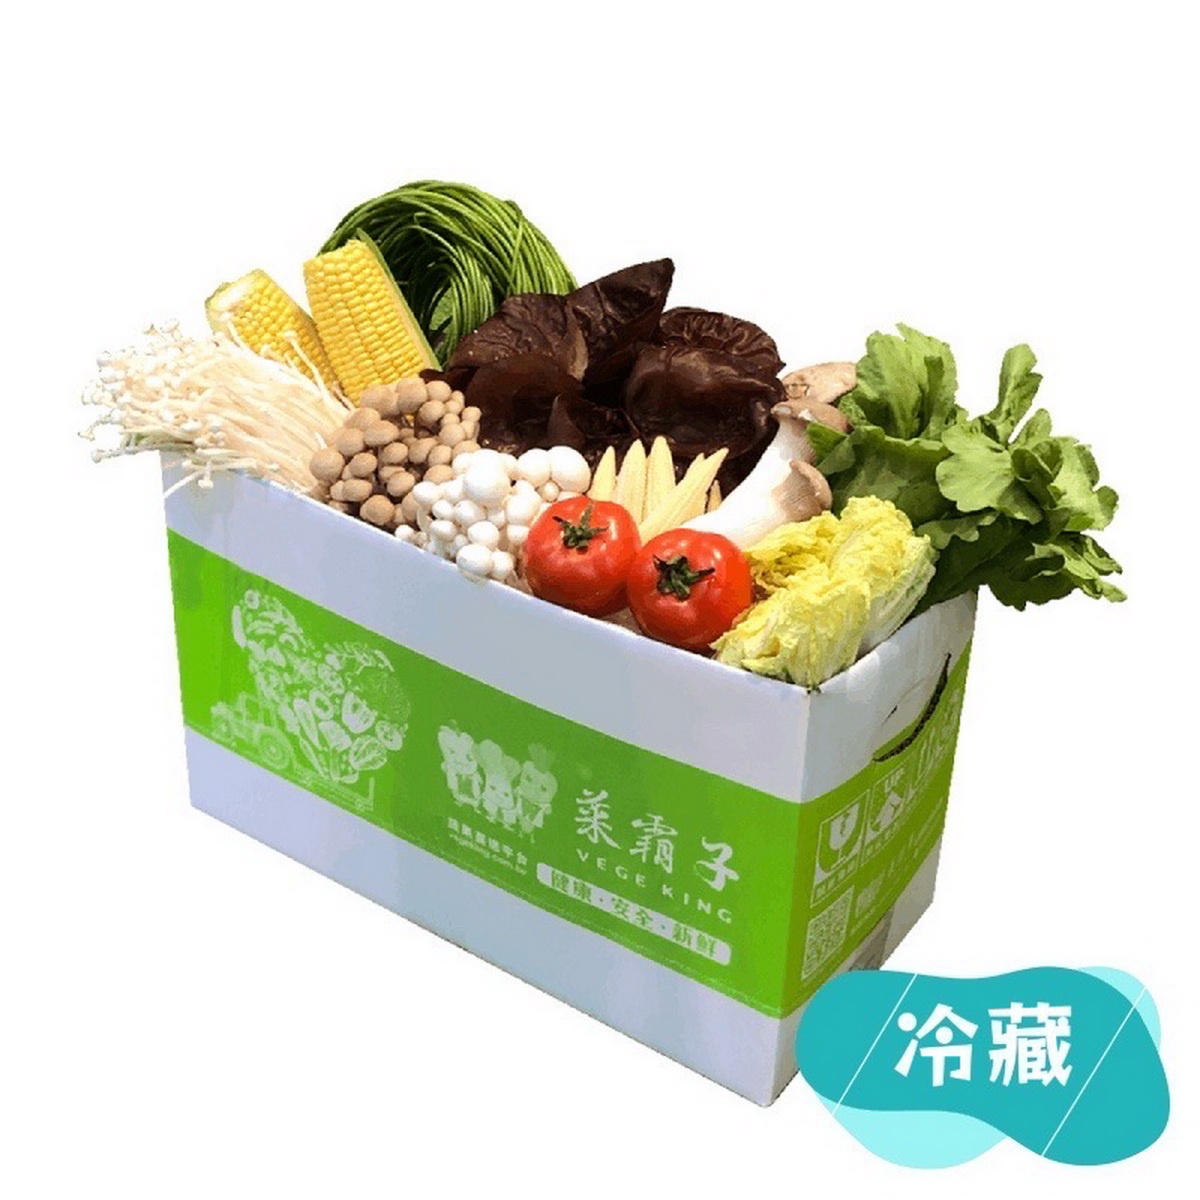 「Hi-Life萊爾富網路旗艦店」推出【菜霸子嚴選】火鍋蔬菜組合箱，特惠價599元